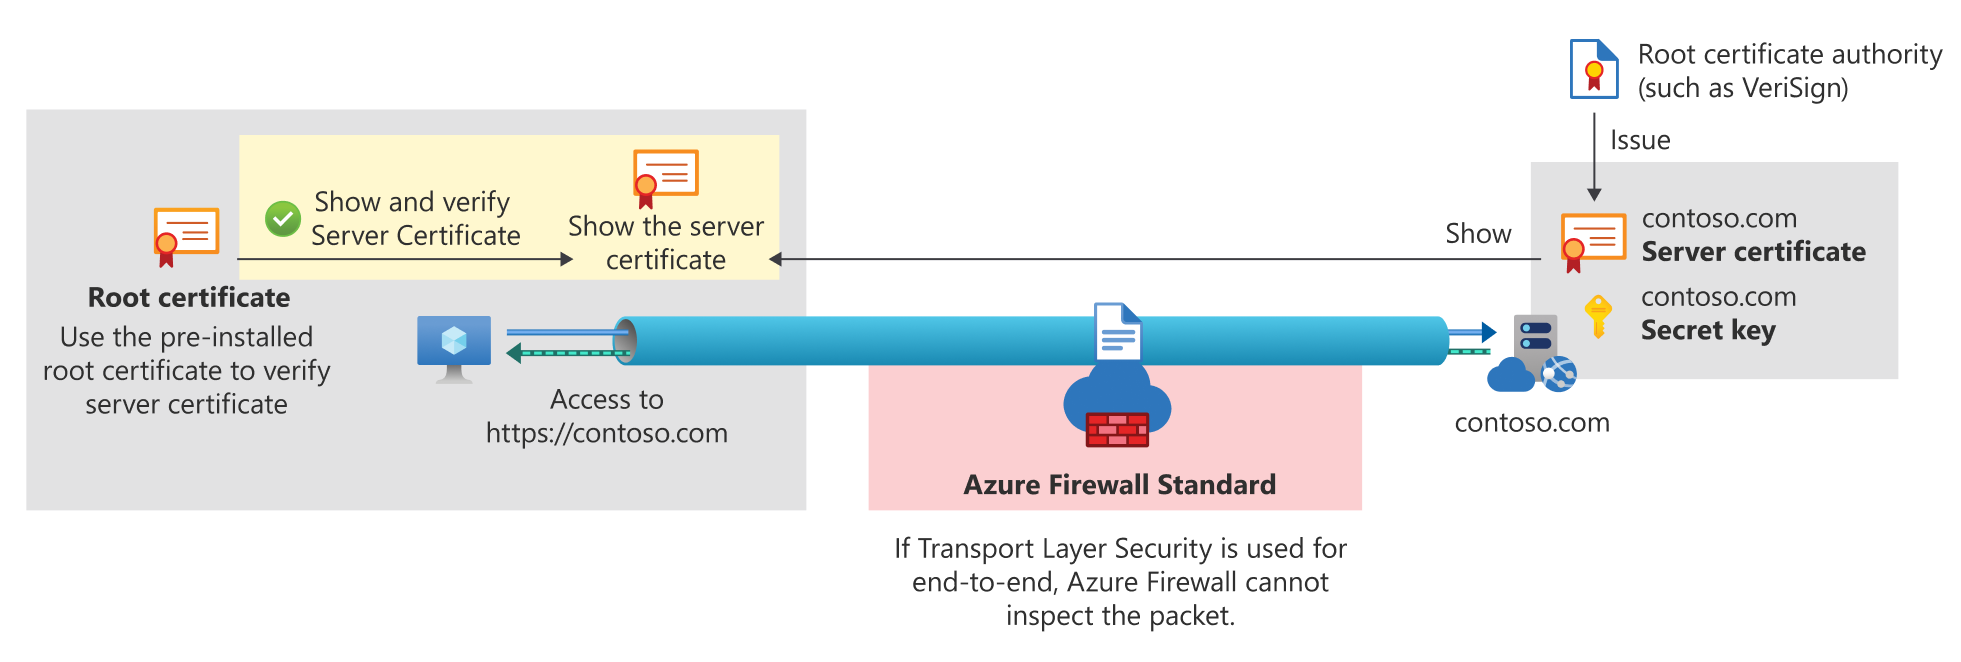 TLS de un extremo a otro para la versión estándar de Azure Firewall